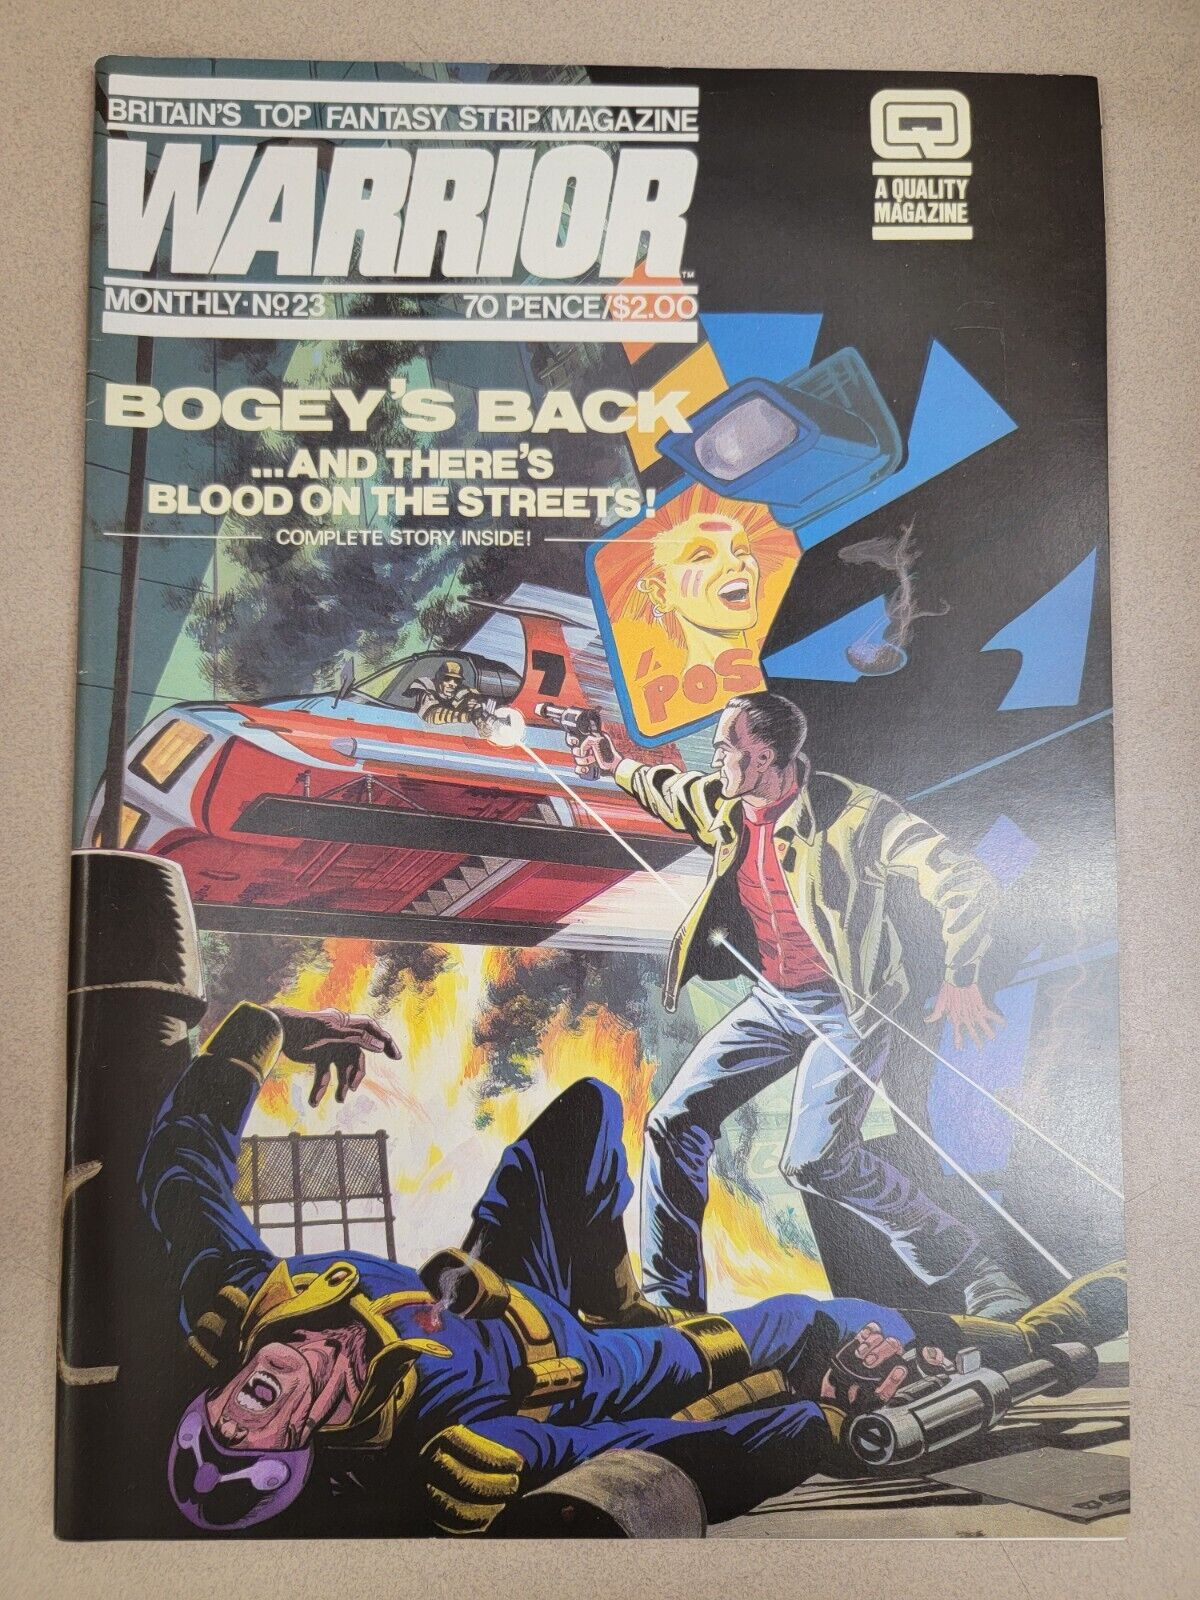 Warrior Magazine Vol. 2 #11 (Cover #23) Bogey's Back October 1984